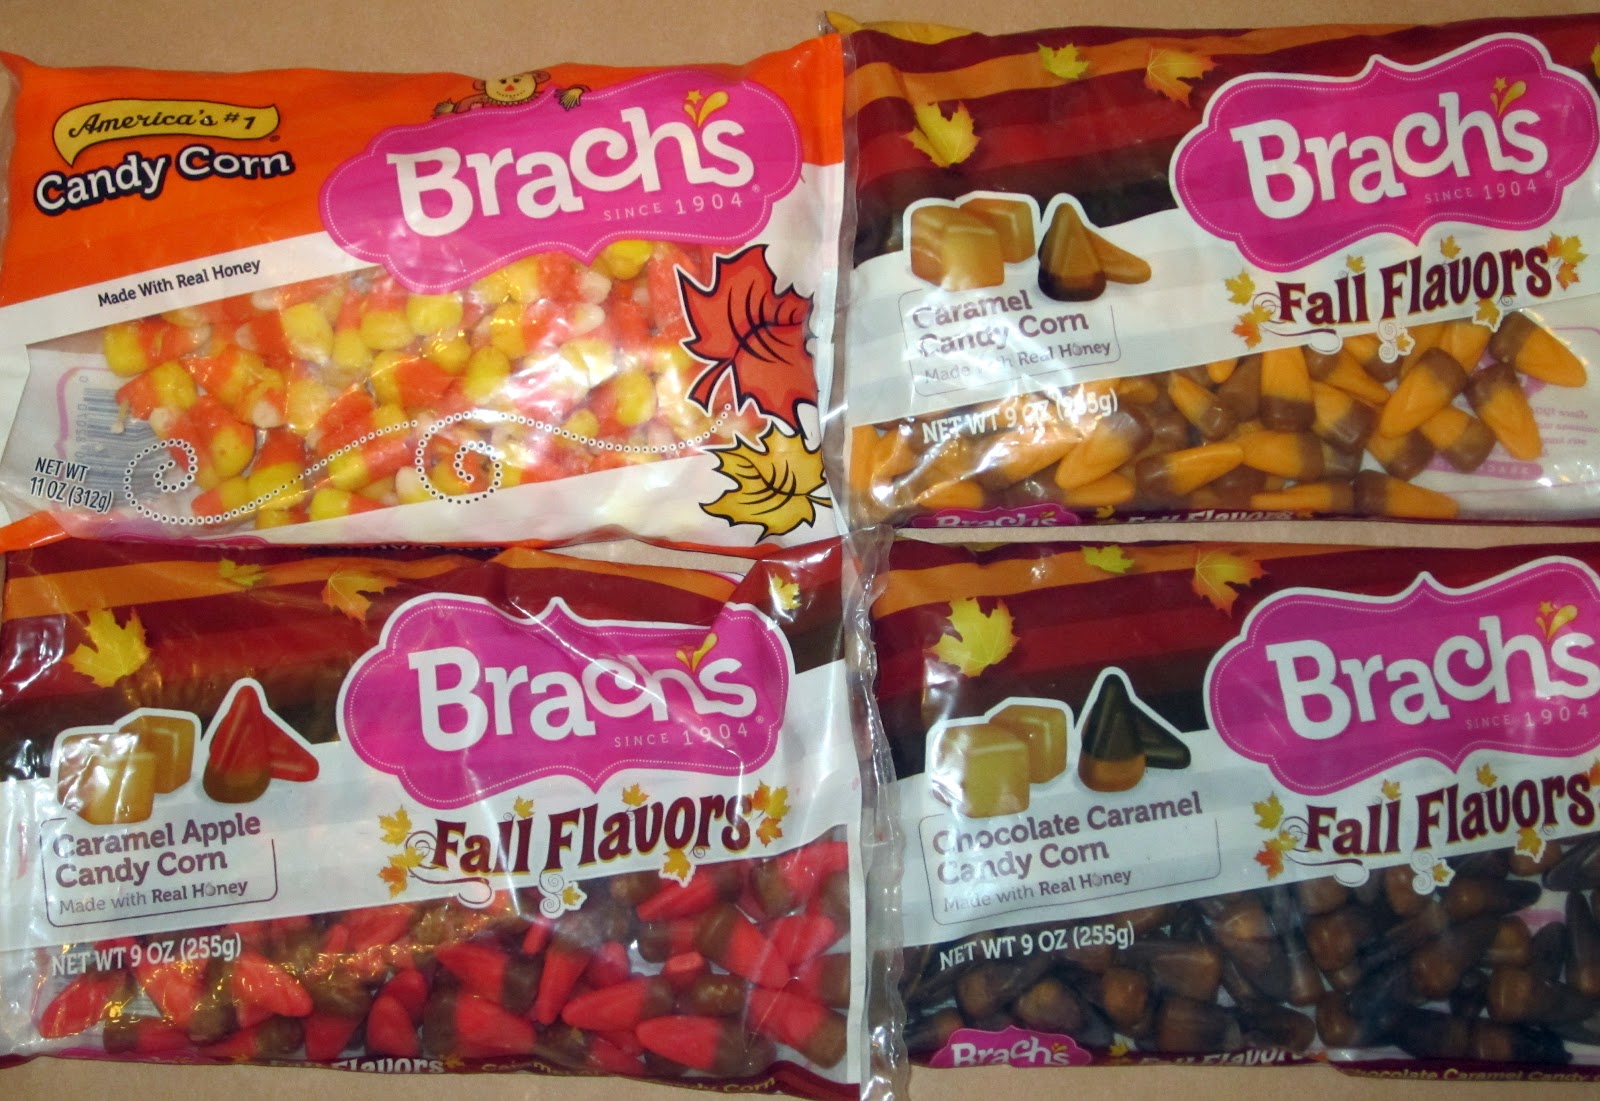 Brachs, Candy Corn Original, 11 Ounce